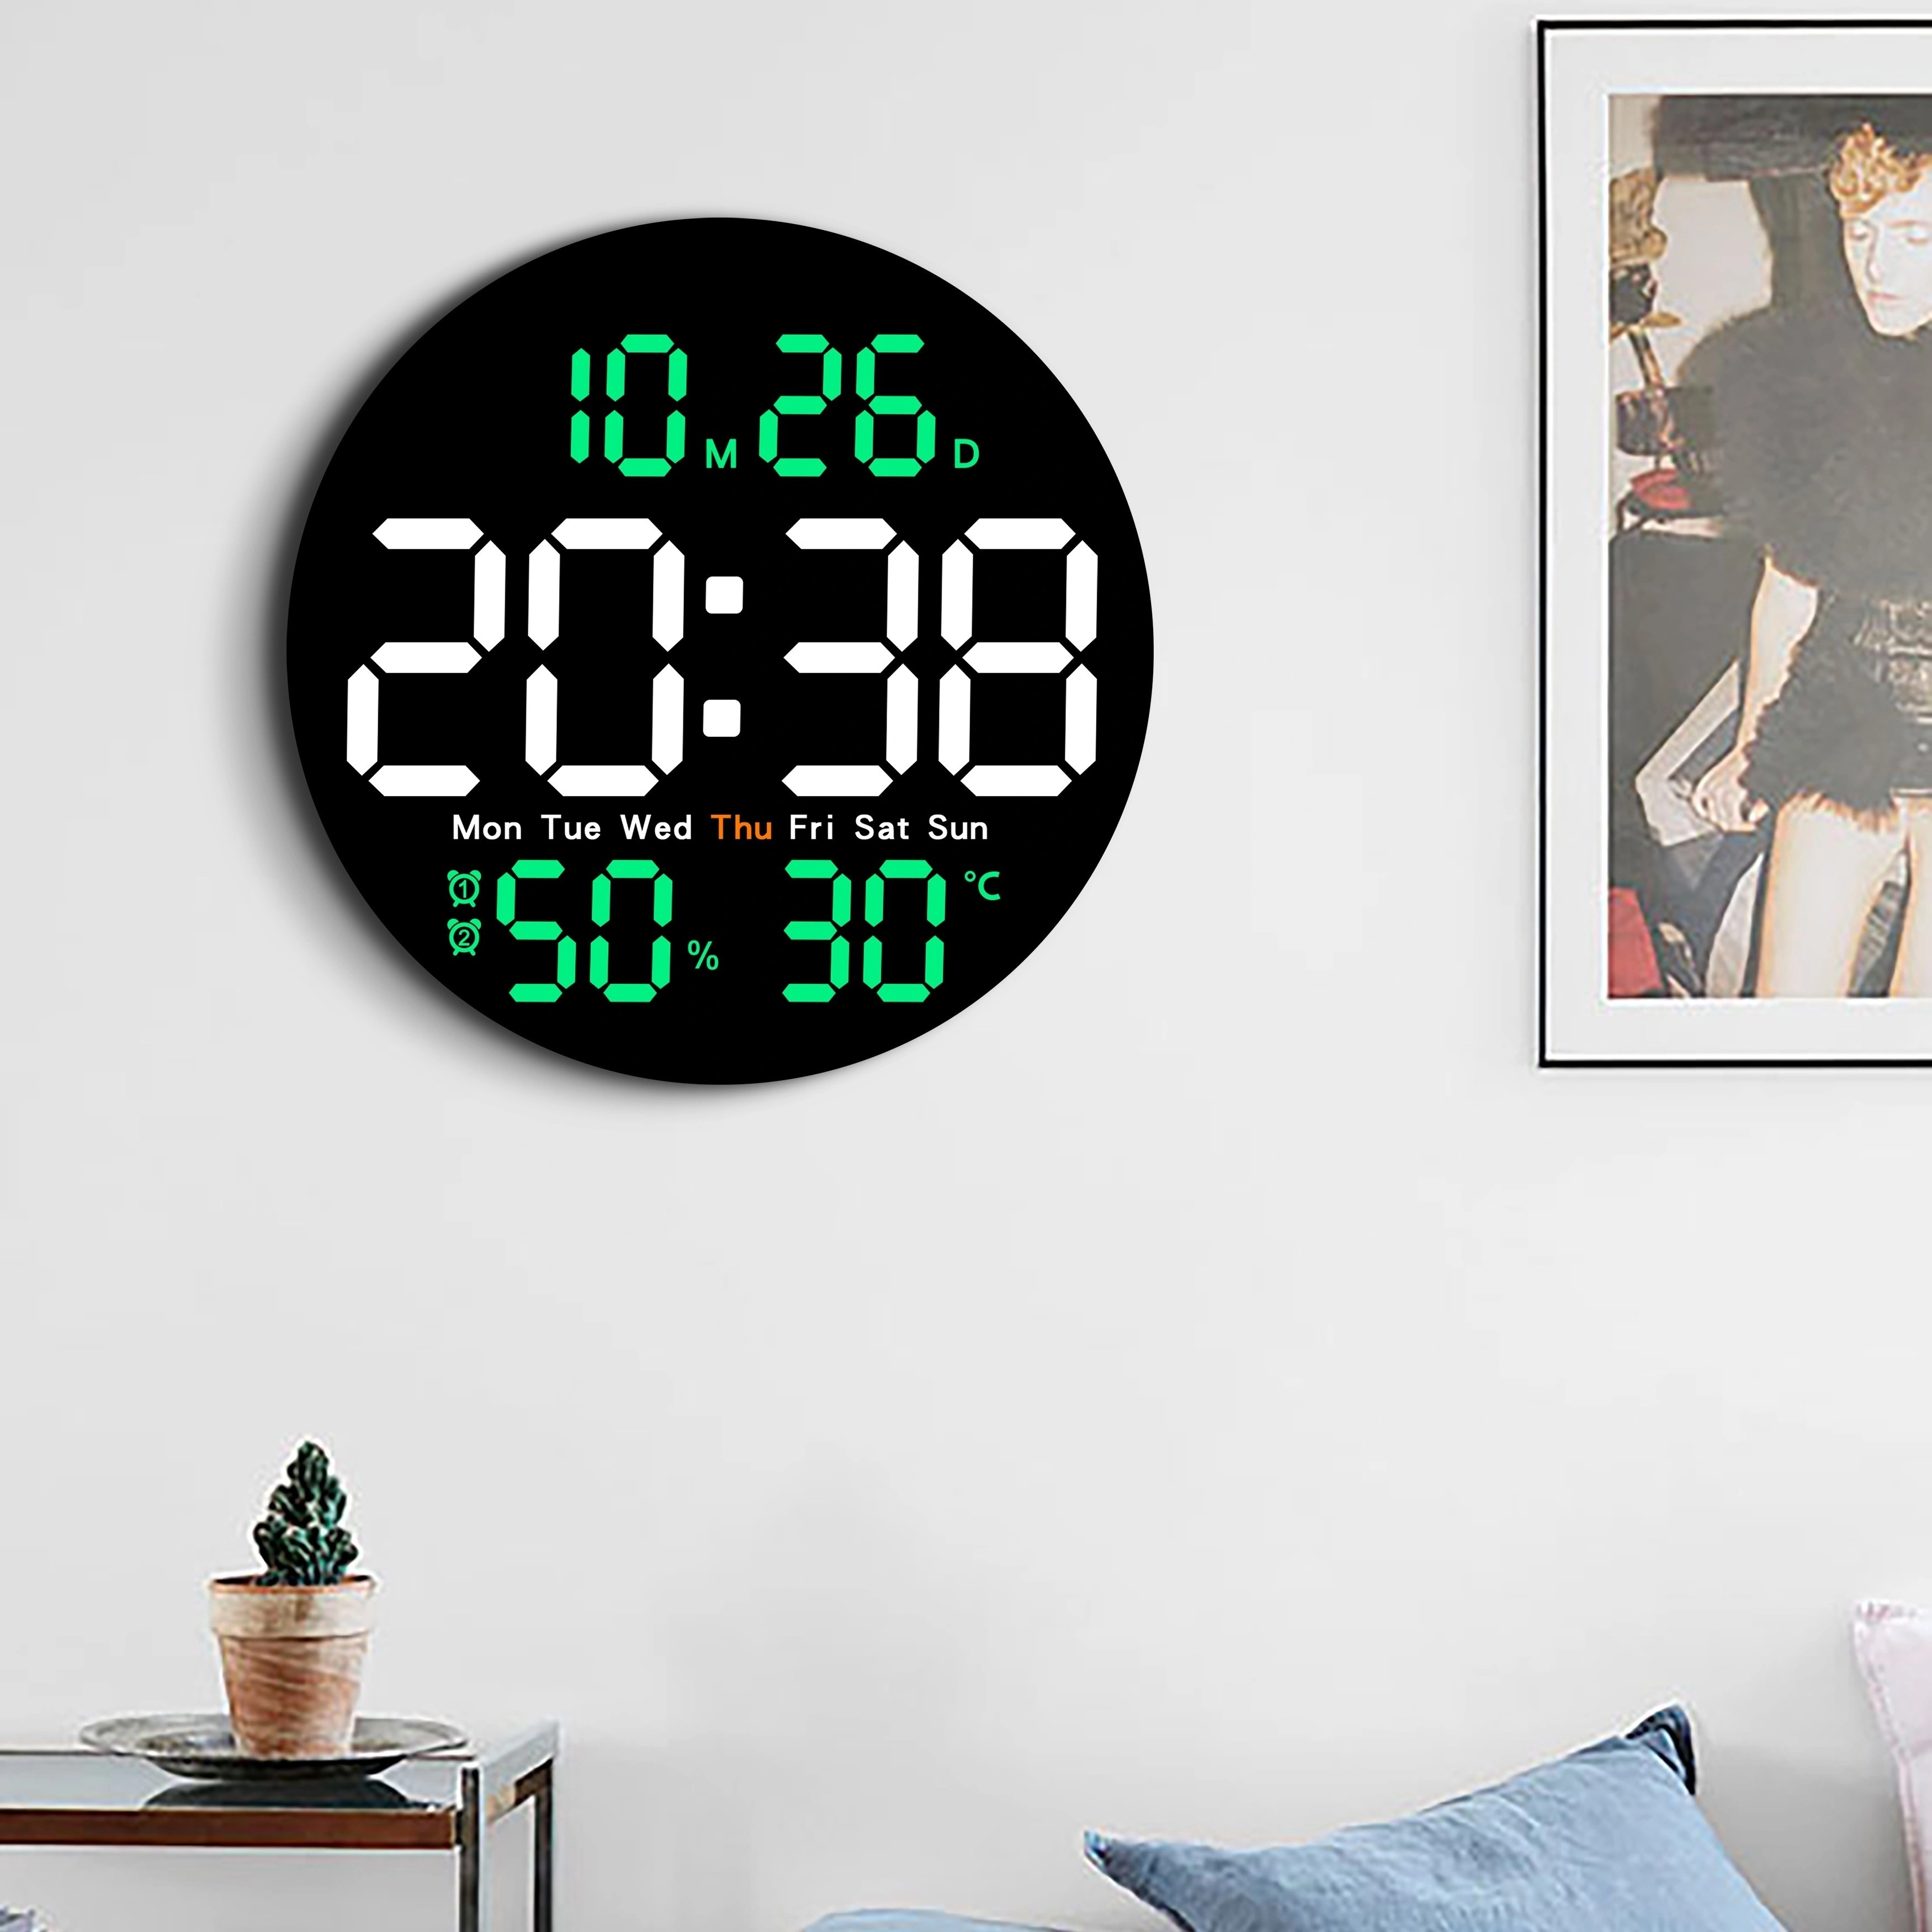 Reloj digital, reloj de pared digital con pantalla LED grande de 11.5  pulgadas, brillo ajustable, con día y fecha, temperatura interior,  repetición